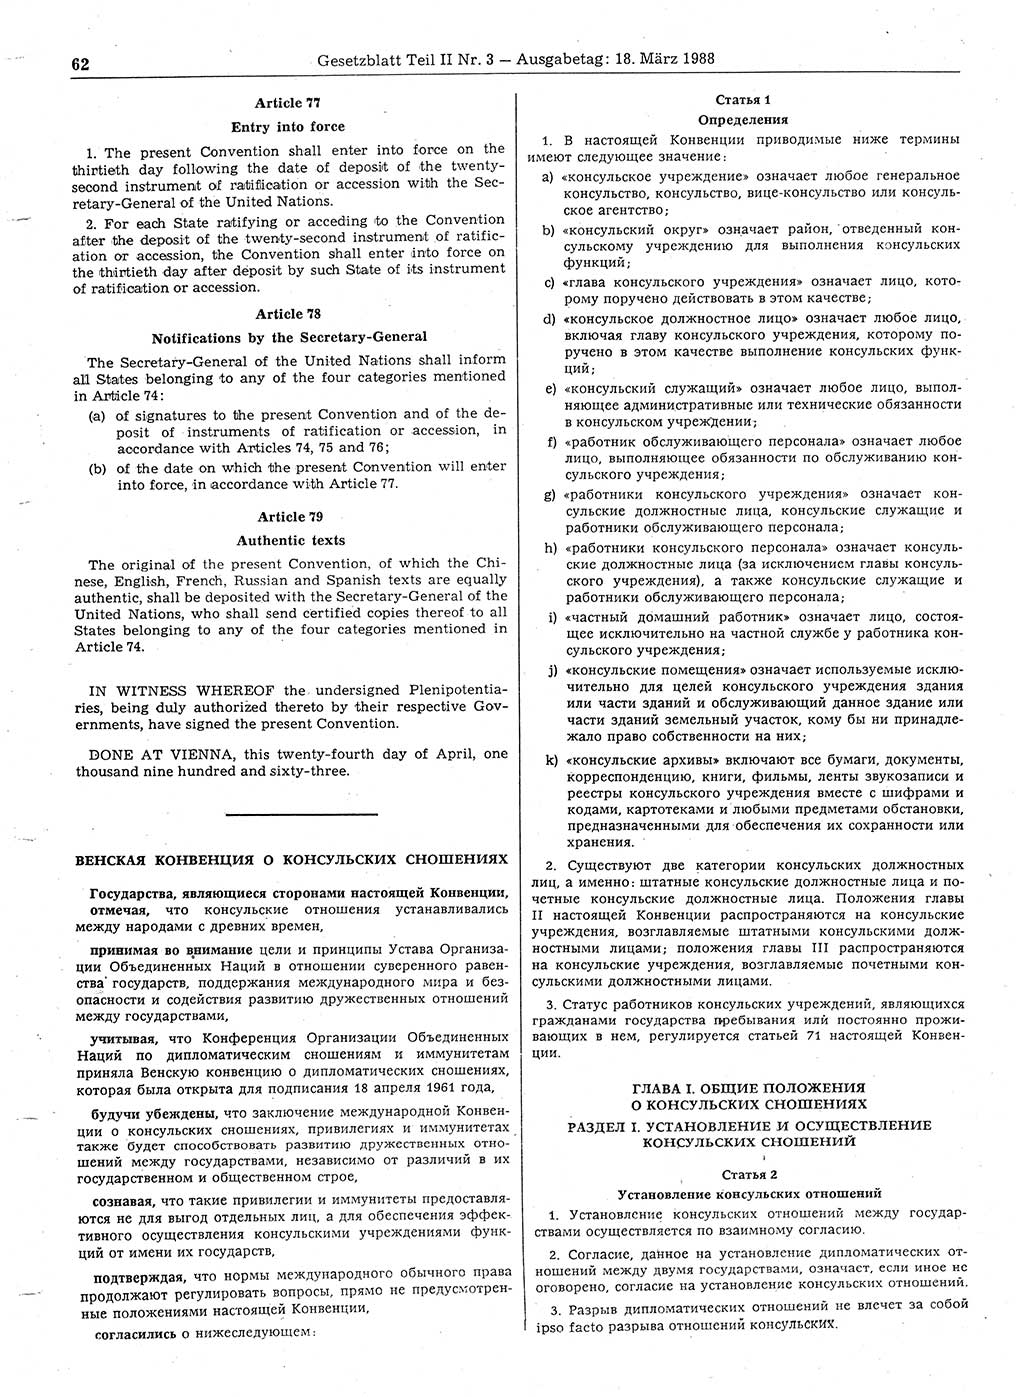 Gesetzblatt (GBl.) der Deutschen Demokratischen Republik (DDR) Teil ⅠⅠ 1988, Seite 62 (GBl. DDR ⅠⅠ 1988, S. 62)